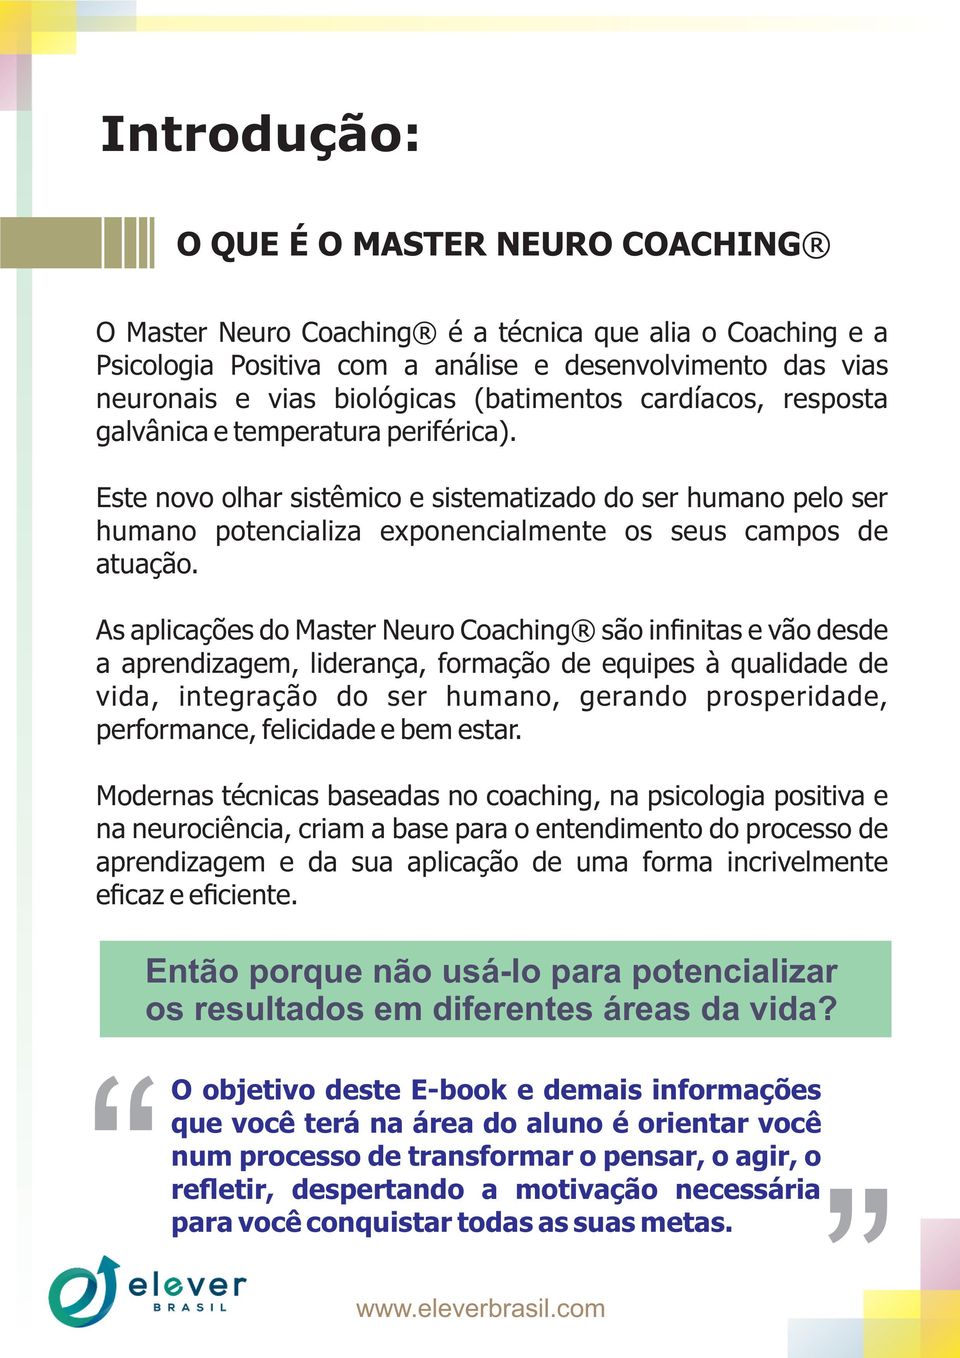 As aplicações do Master Neuro Coaching são infinitas e vão desde a aprendizagem, liderança, formação de equipes à qualidade de vida, integração do ser humano, gerando prosperidade, performance,